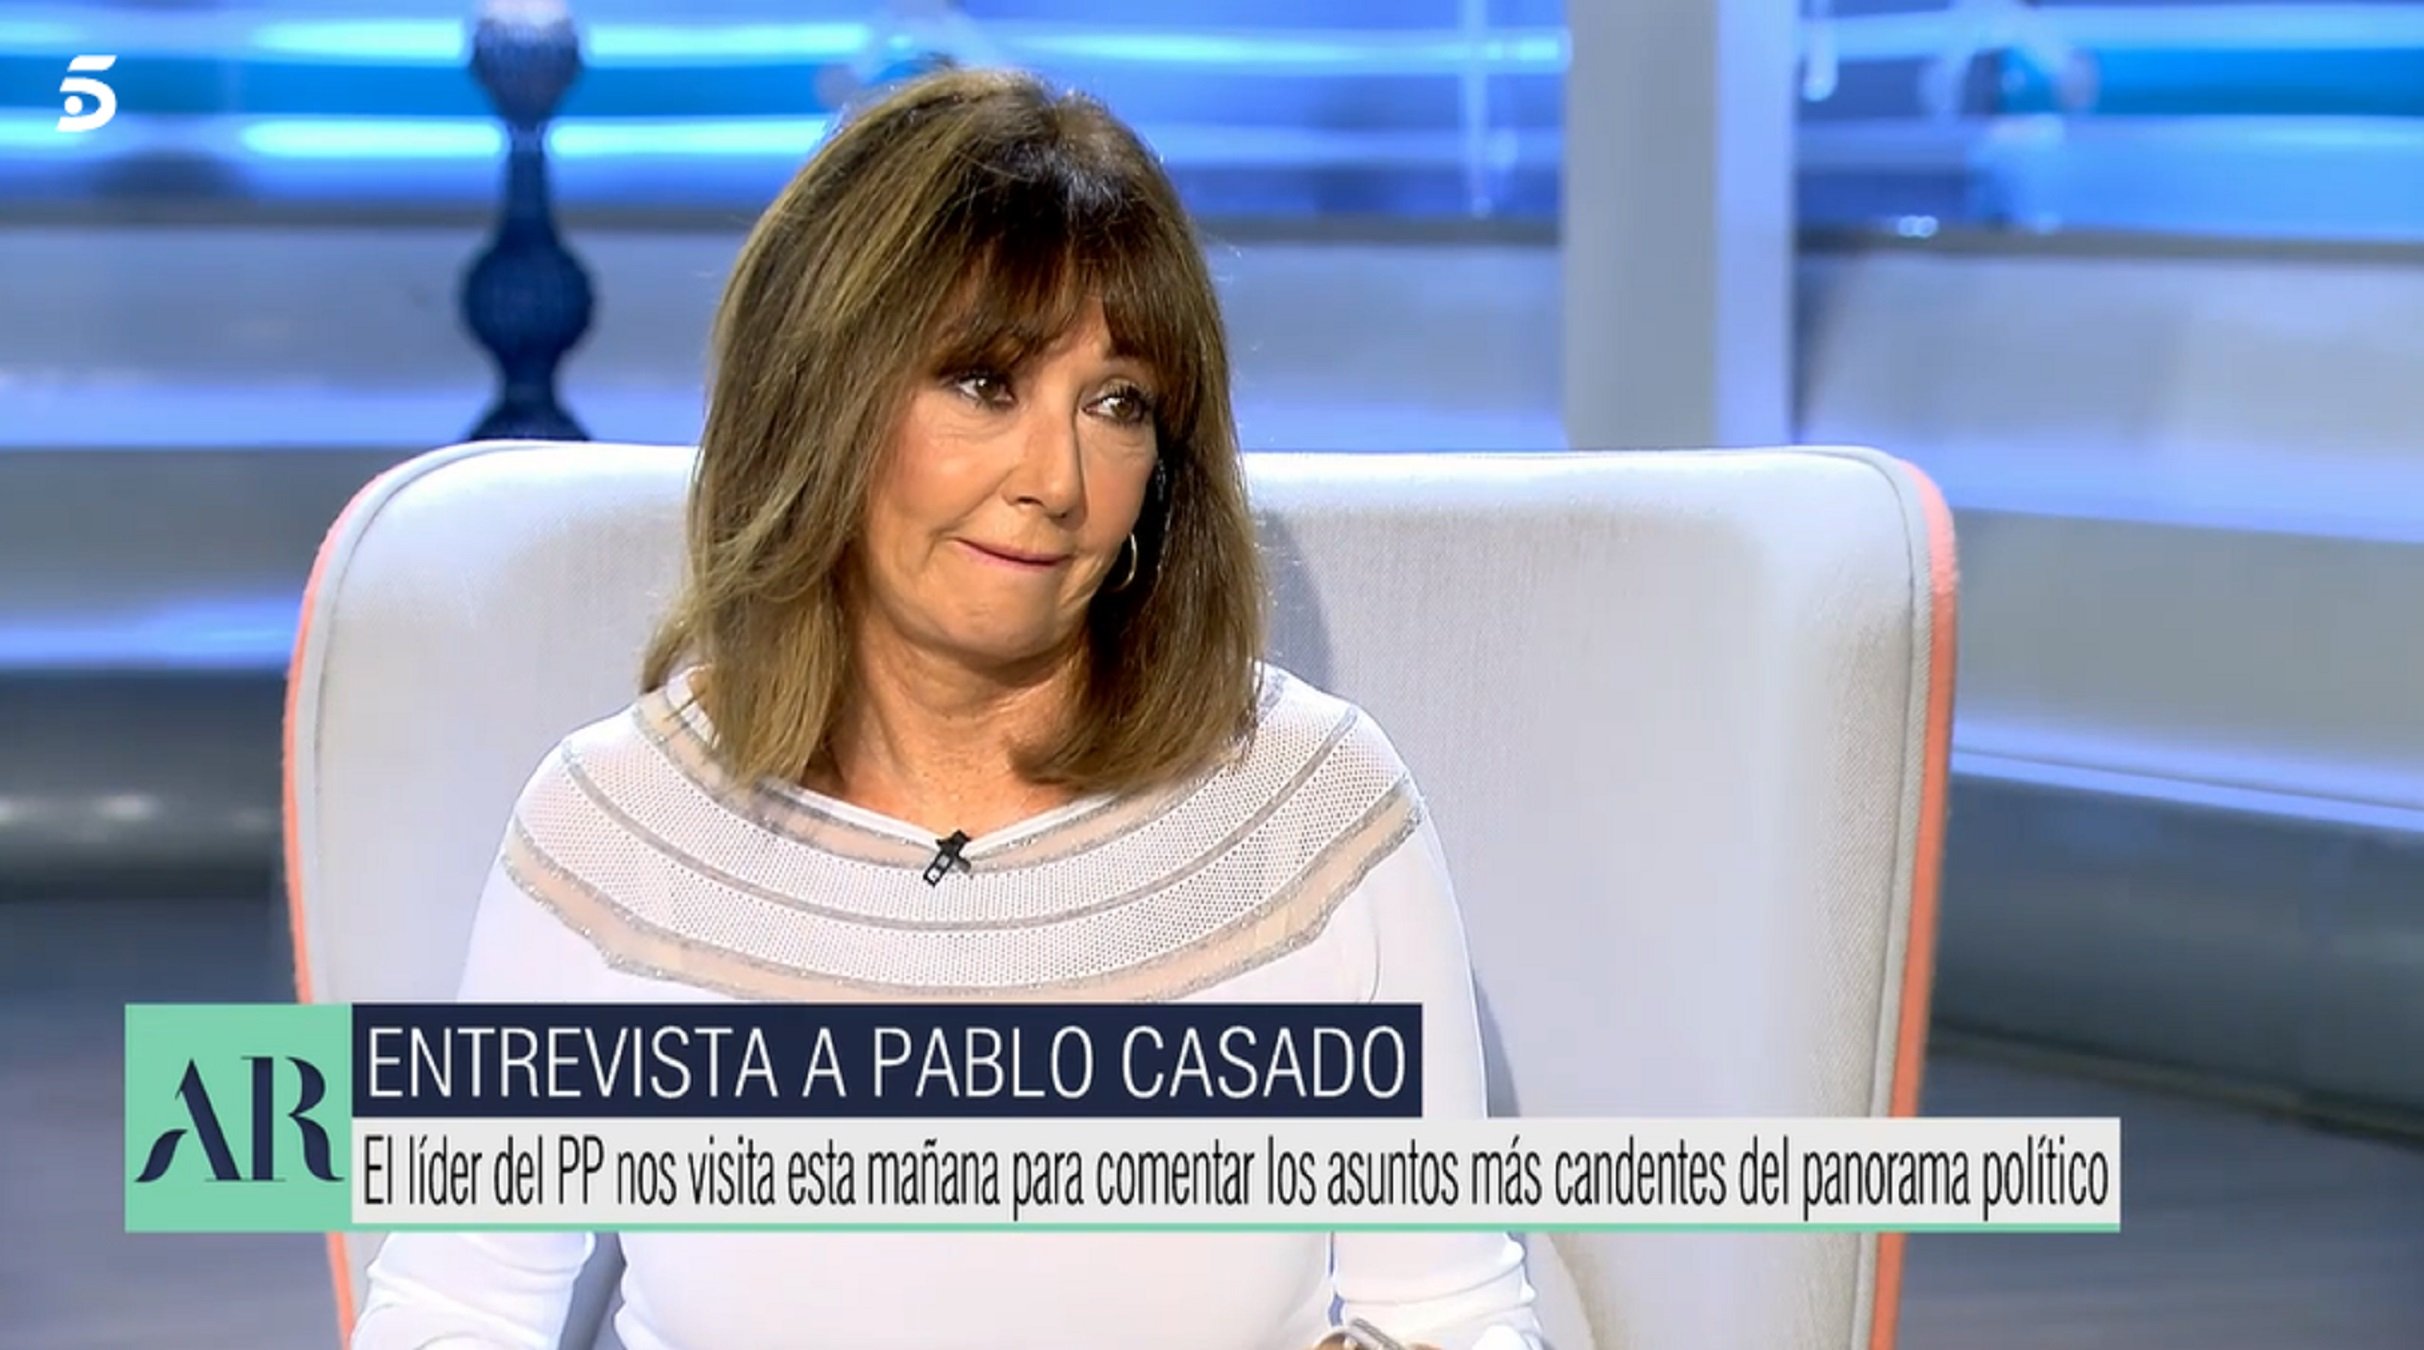 Pablo Casado, amb Ana Rosa, la riota màxima per com tenia la cara: "Qué cuadro"